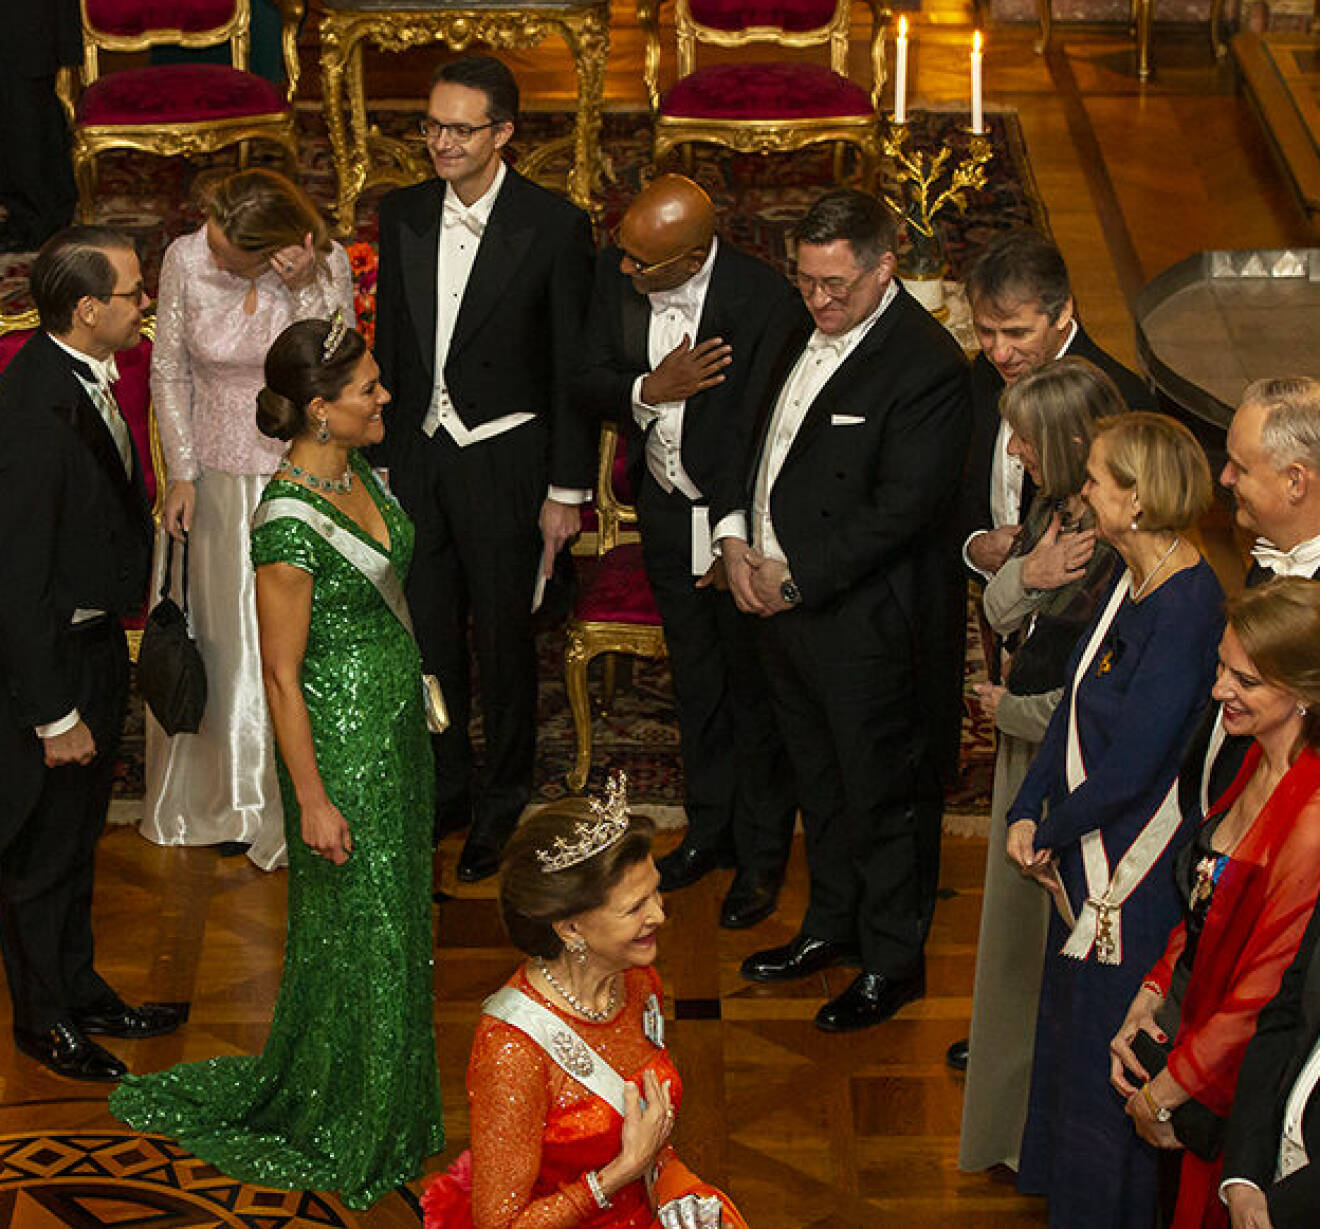 Kronprinsessan Victoria och drottning Silvia hälsar på gäster vid en kungamiddag på slottet